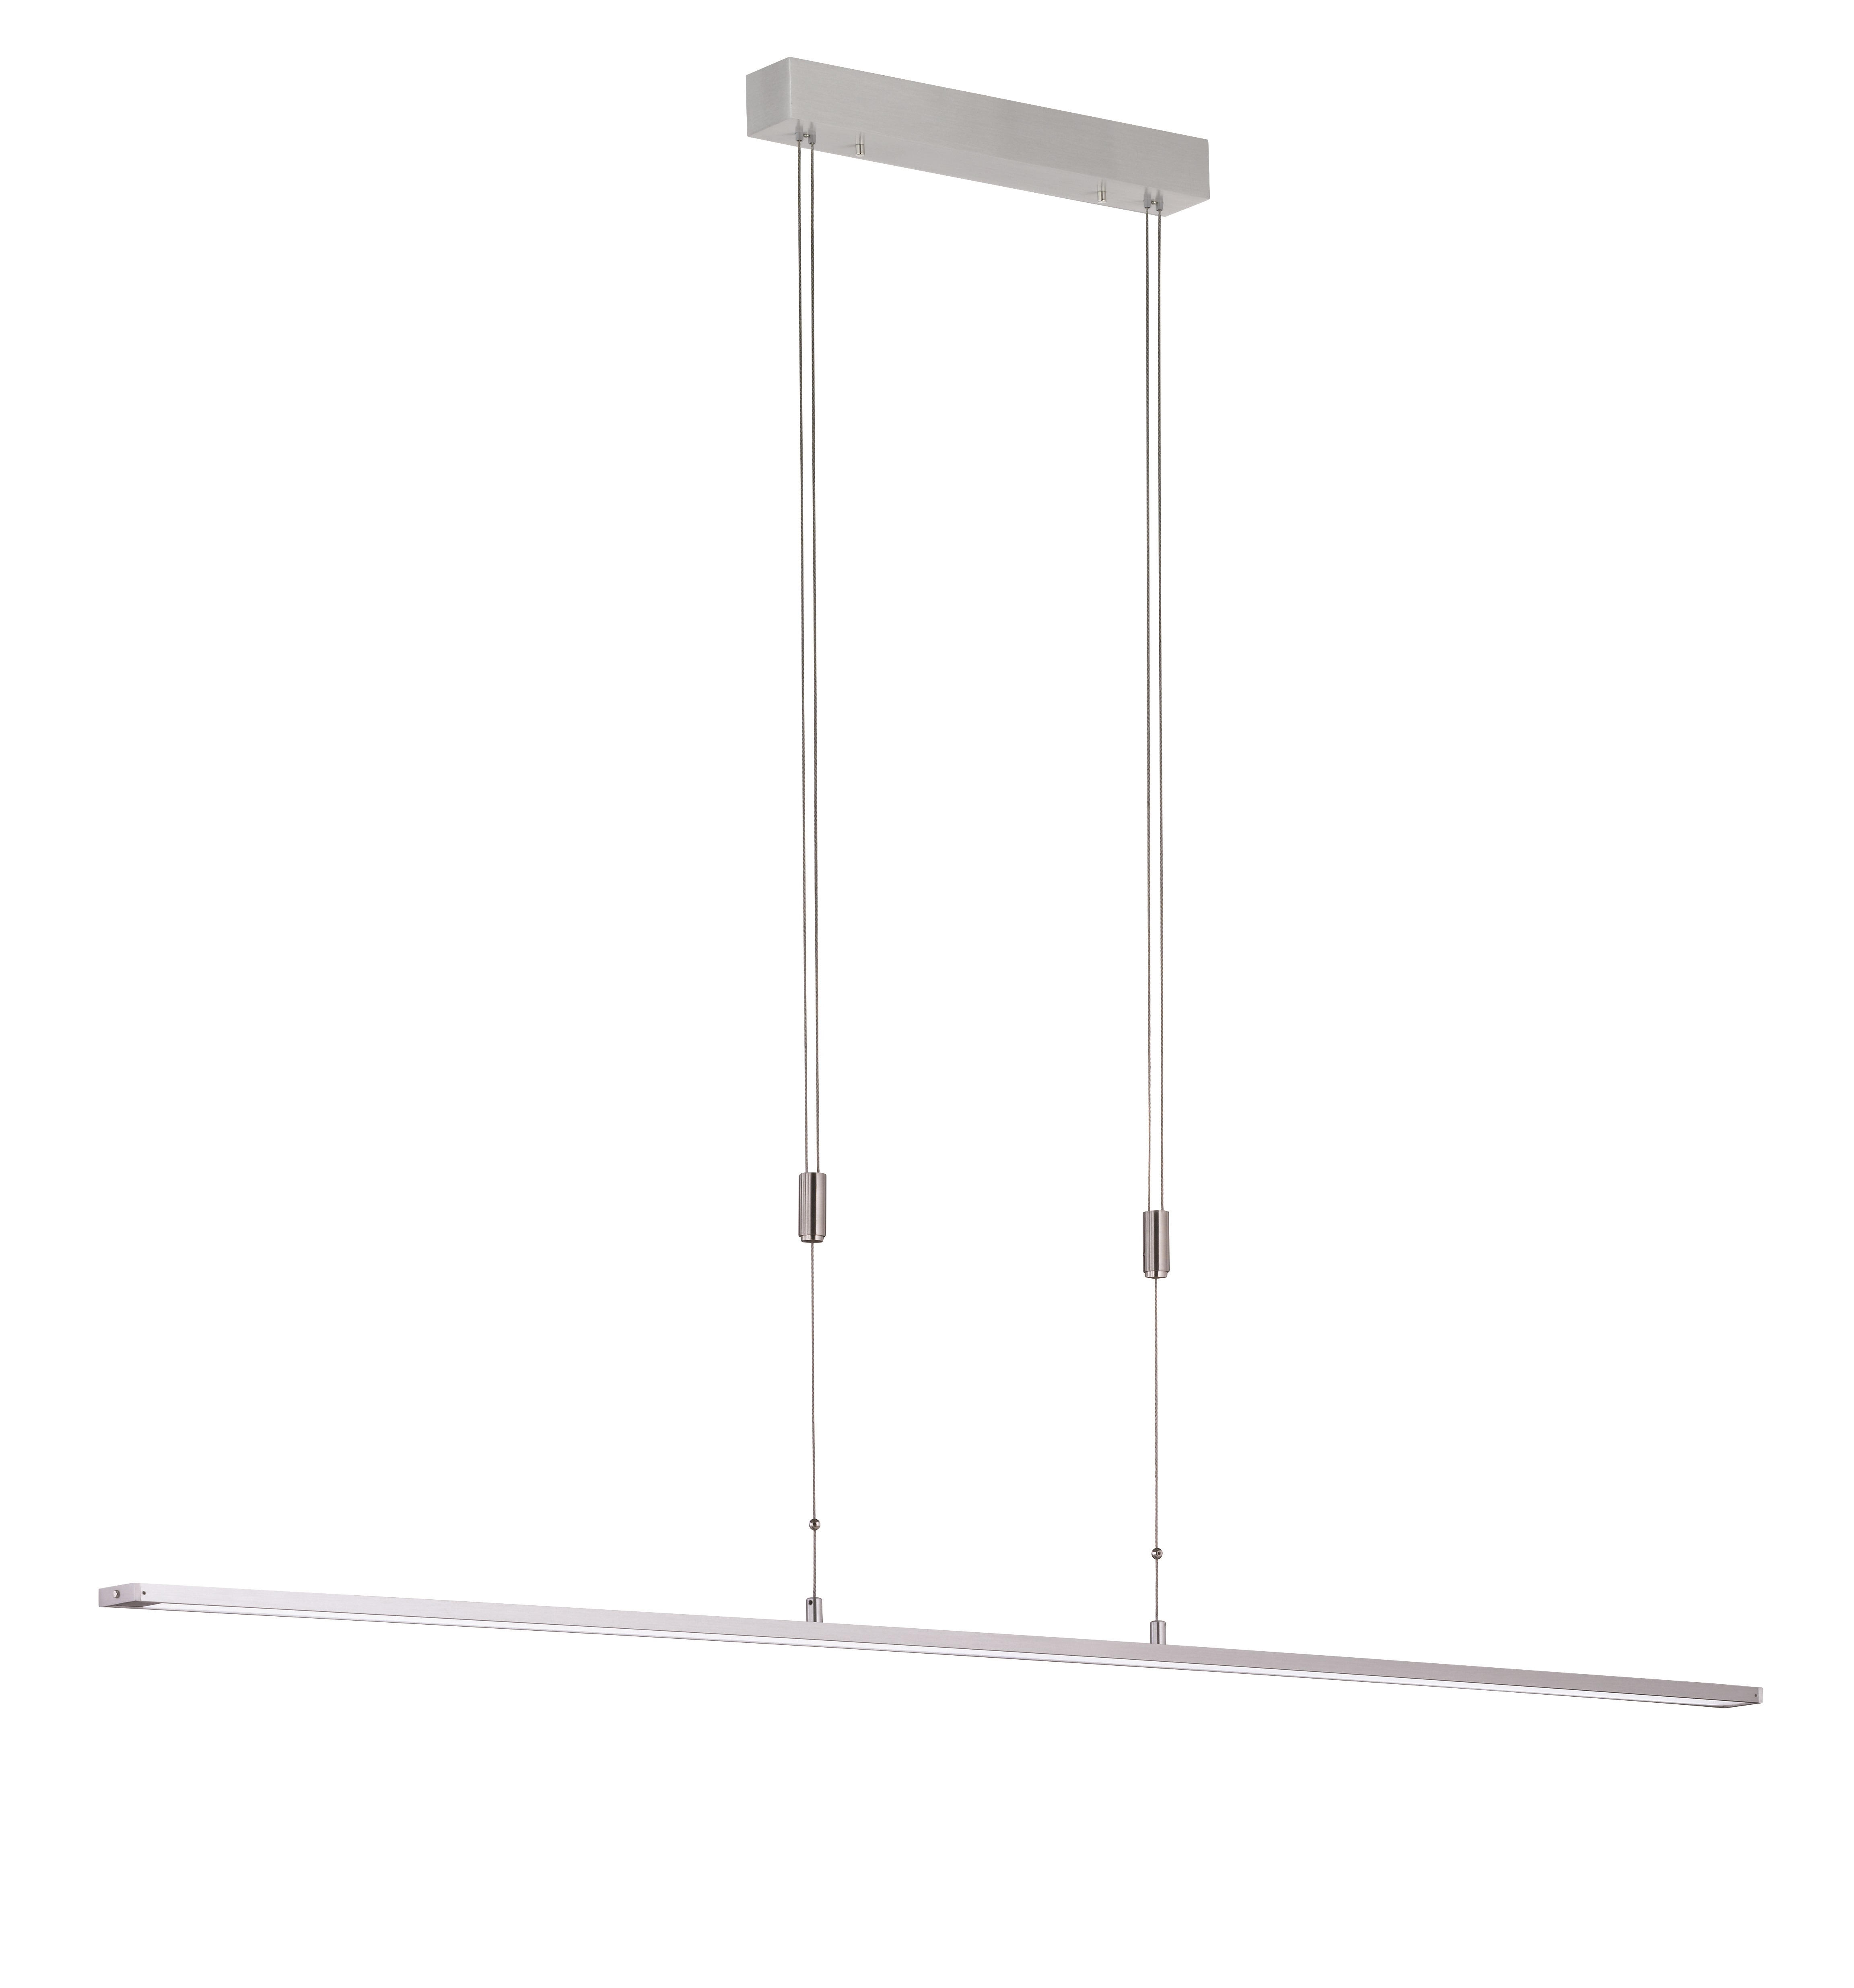 LED-HÄNGELEUCHTE METZ  - Alufarben/Weiß, Design, Kunststoff/Metall (160/90-150cm) - Fischer & Honsel